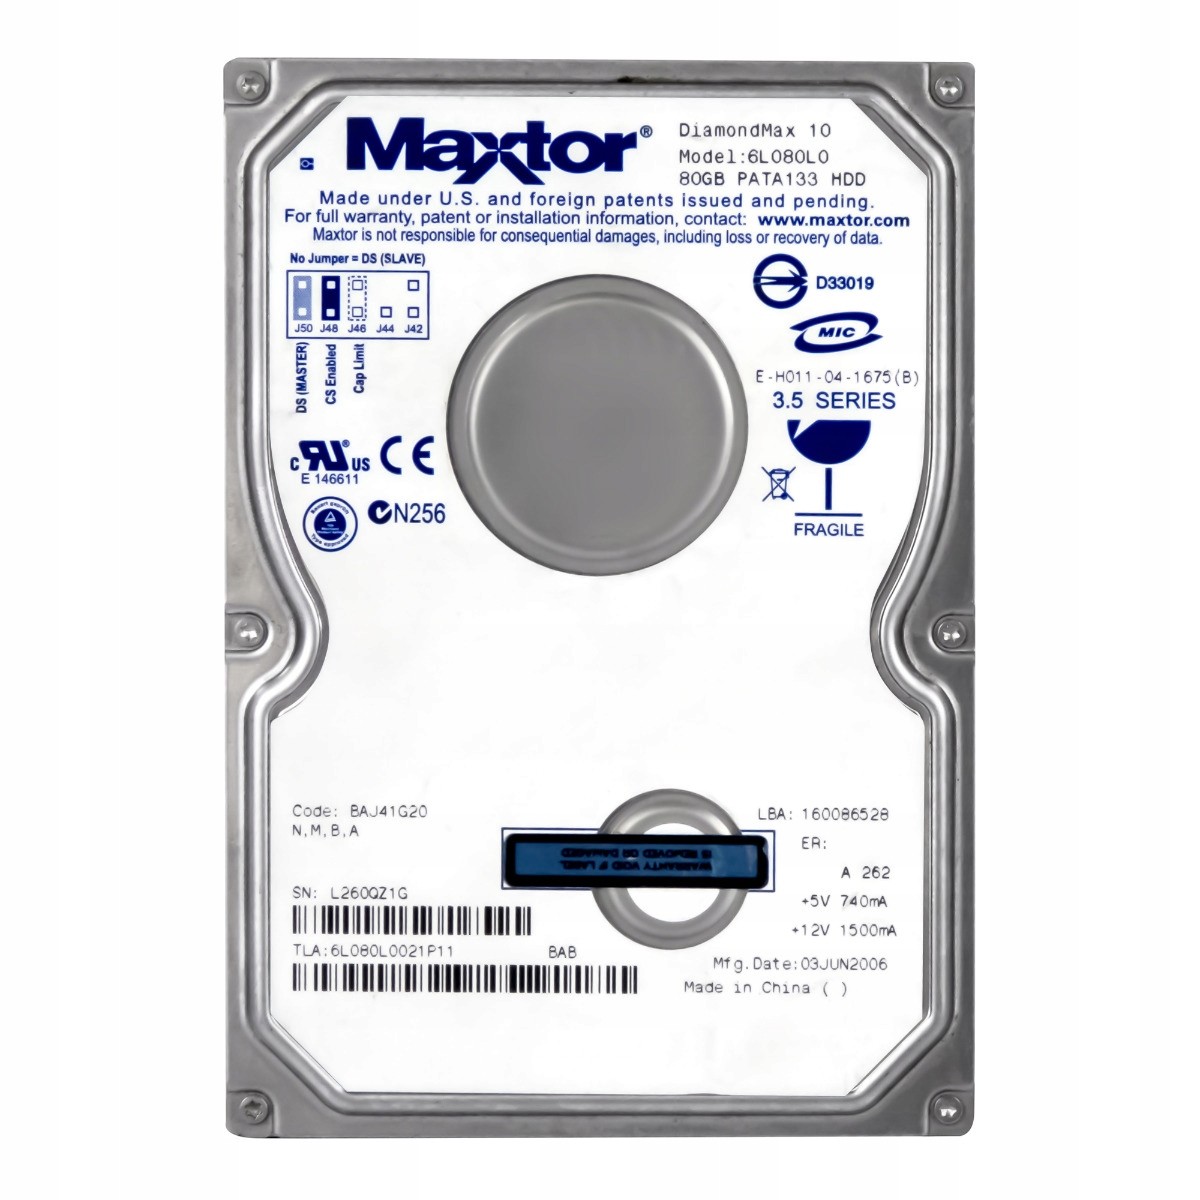 Maxtor DiamondMax 10 80GB 7.2K Ata 3.5'' 6L080L0